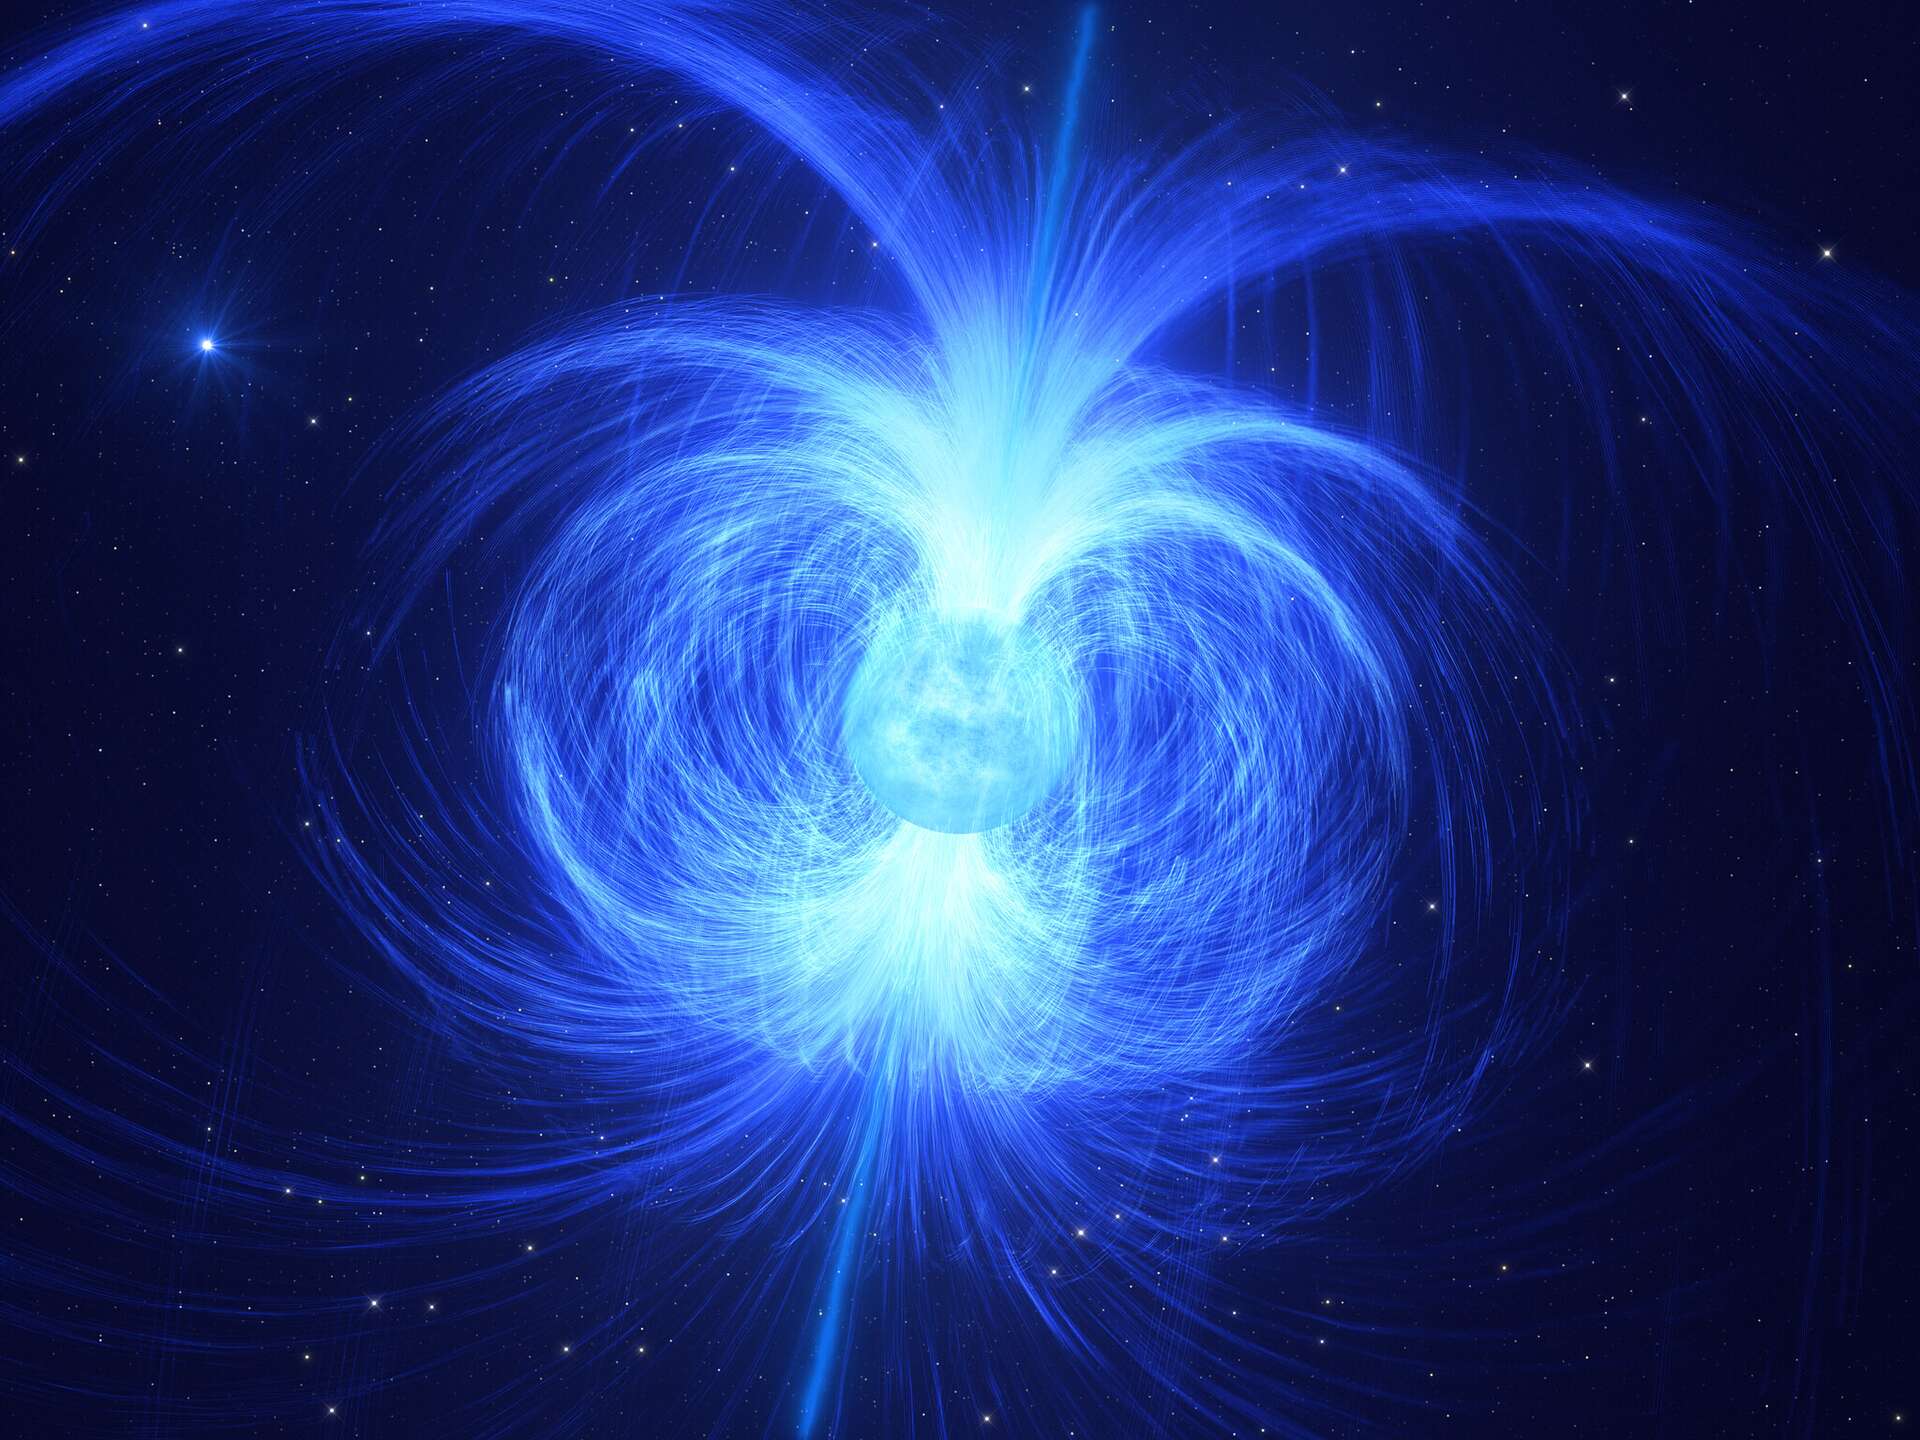 We weten misschien waarom magnetars een magnetisch veld hebben dat 100.000 miljard keer sterker is dan dat van de aarde